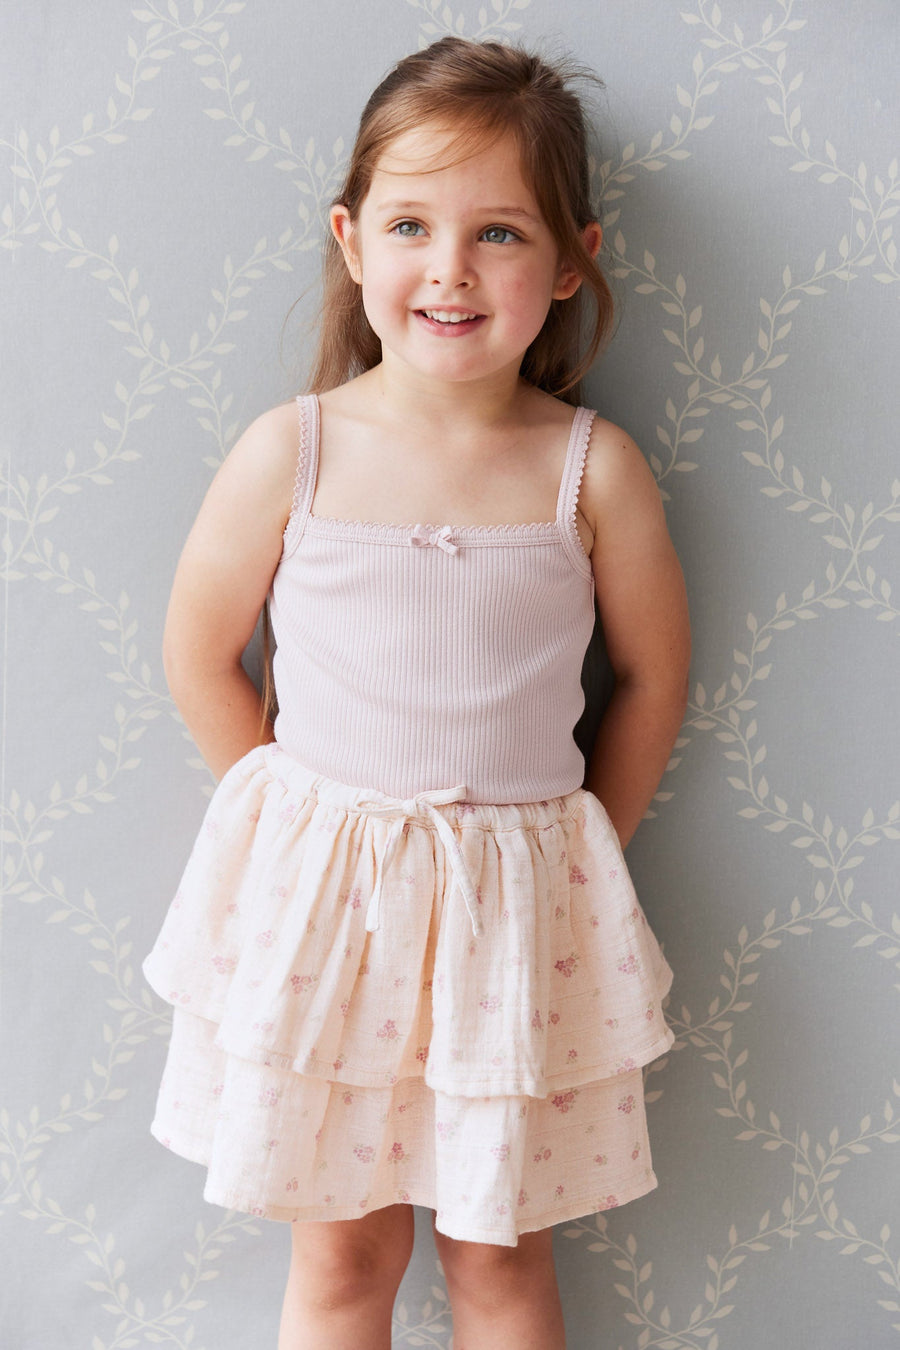 Organic Cotton Muslin Heidi Skirt - Irina Shell Childrens Skirt from Jamie Kay USA